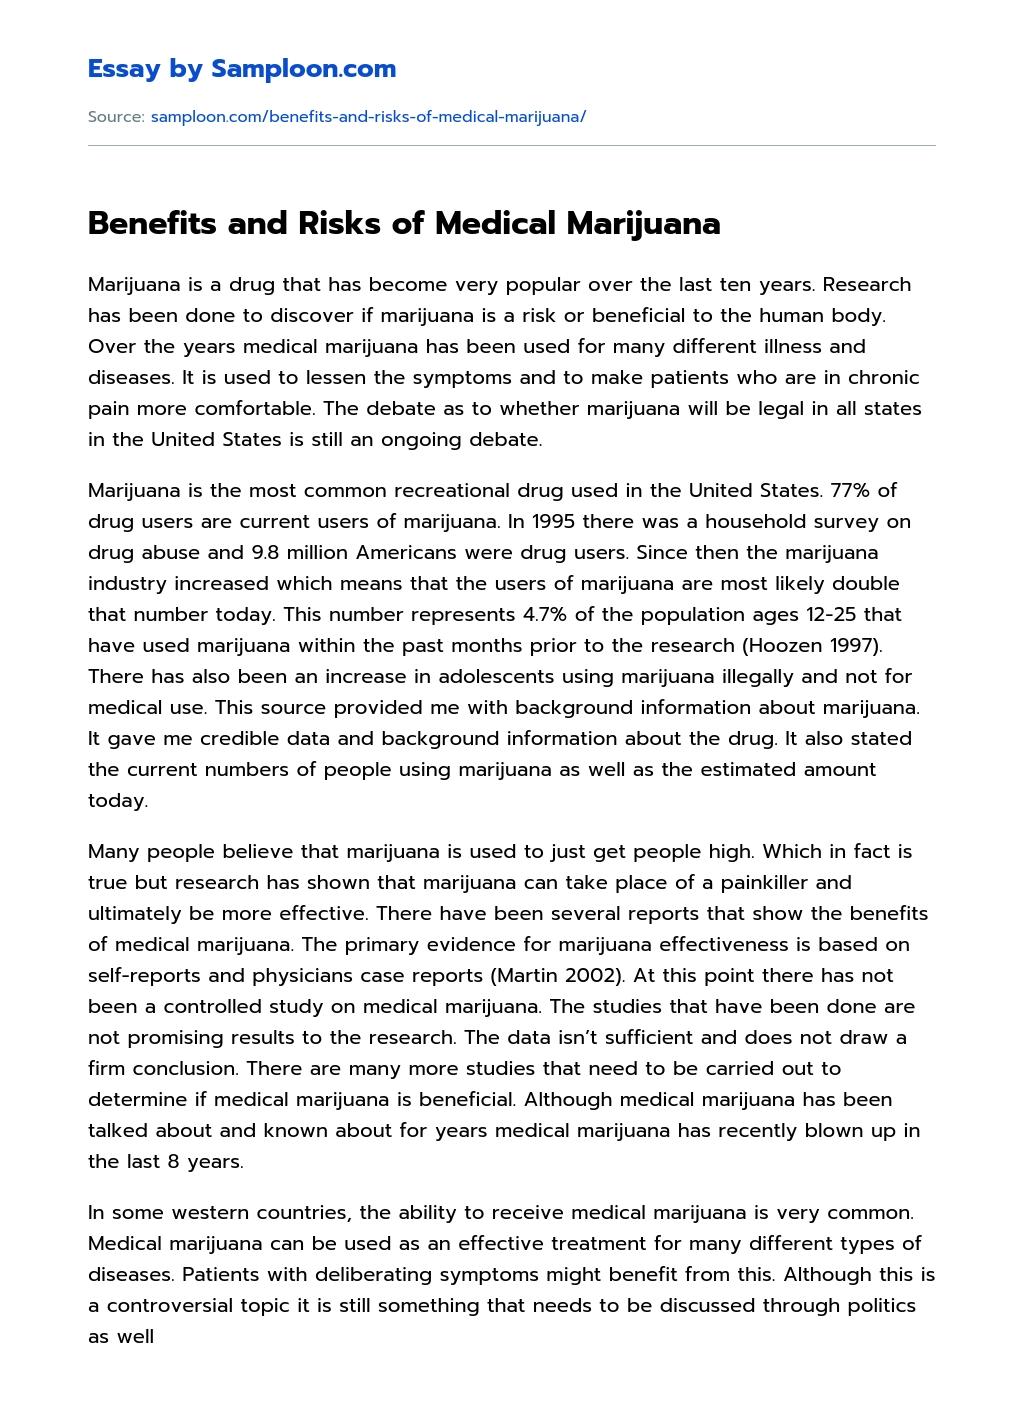 Benefits and Risks of Medical Marijuana essay